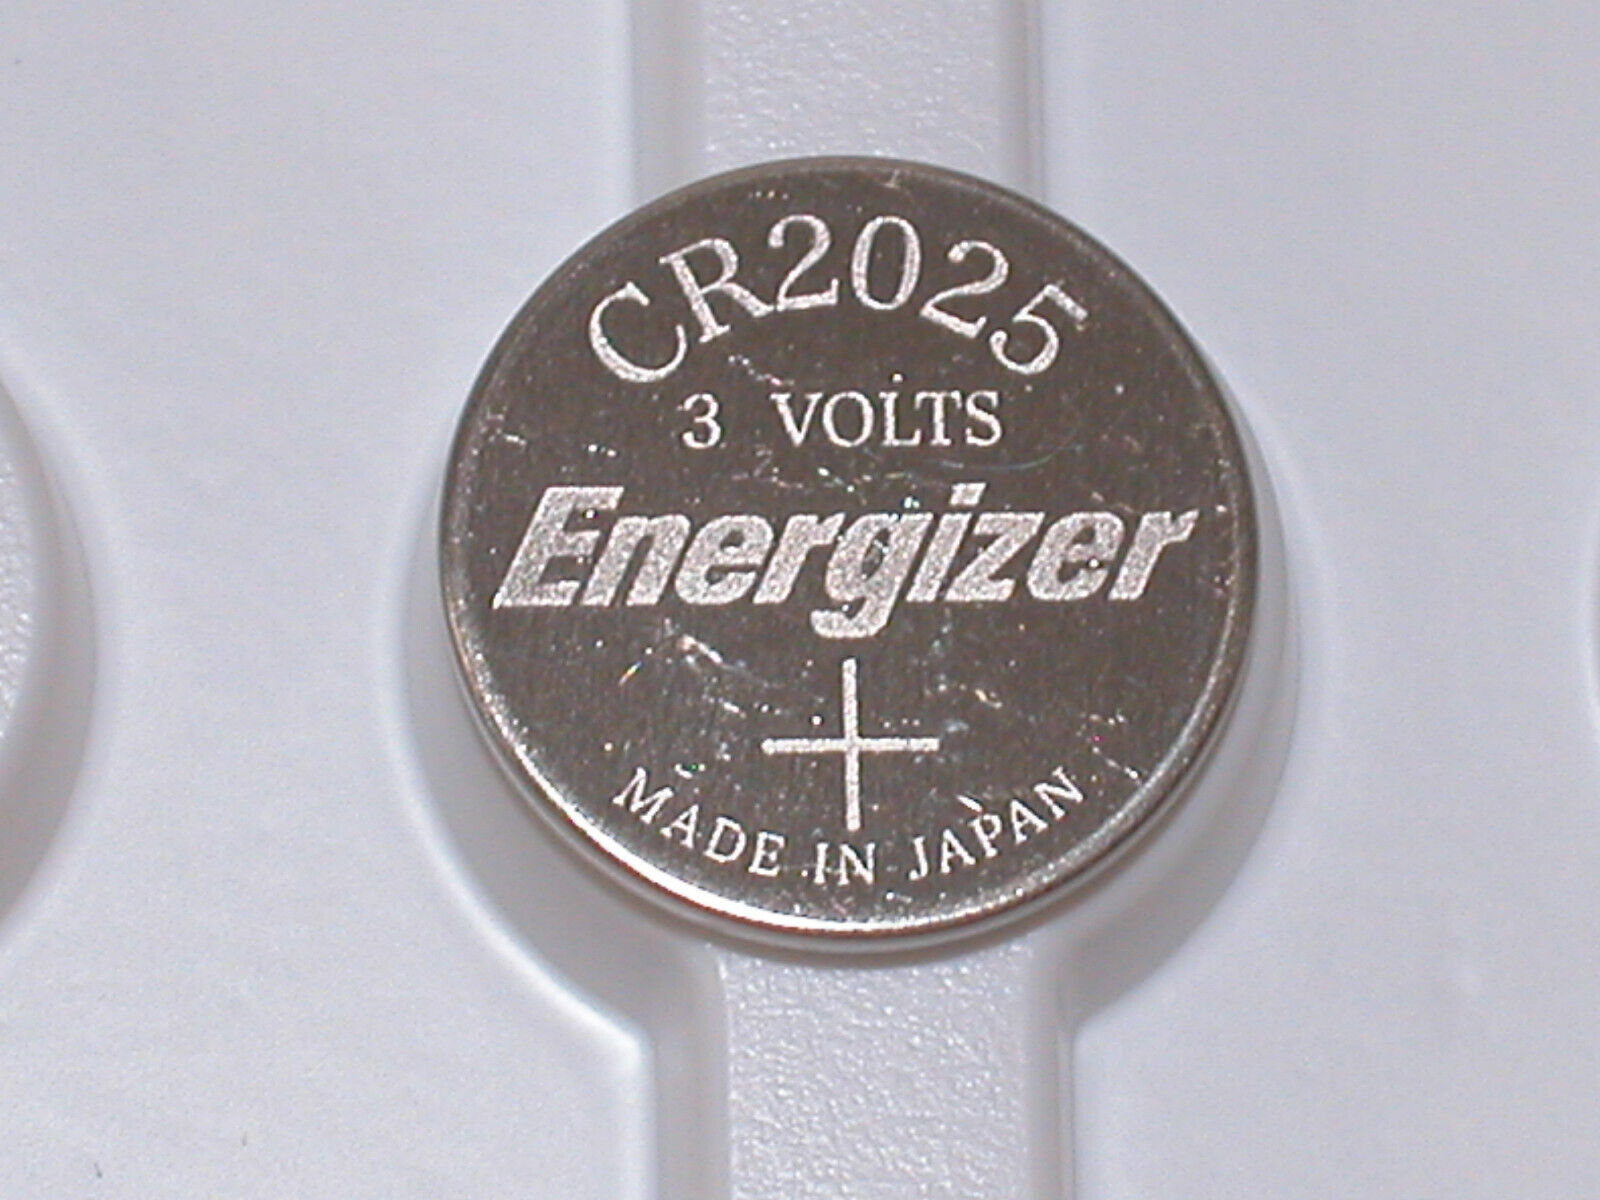 5 BULK ENERGIZER CR2025 CR 2025 3v Lithium Battery MADE IN JAPAN EXPIRE  2027